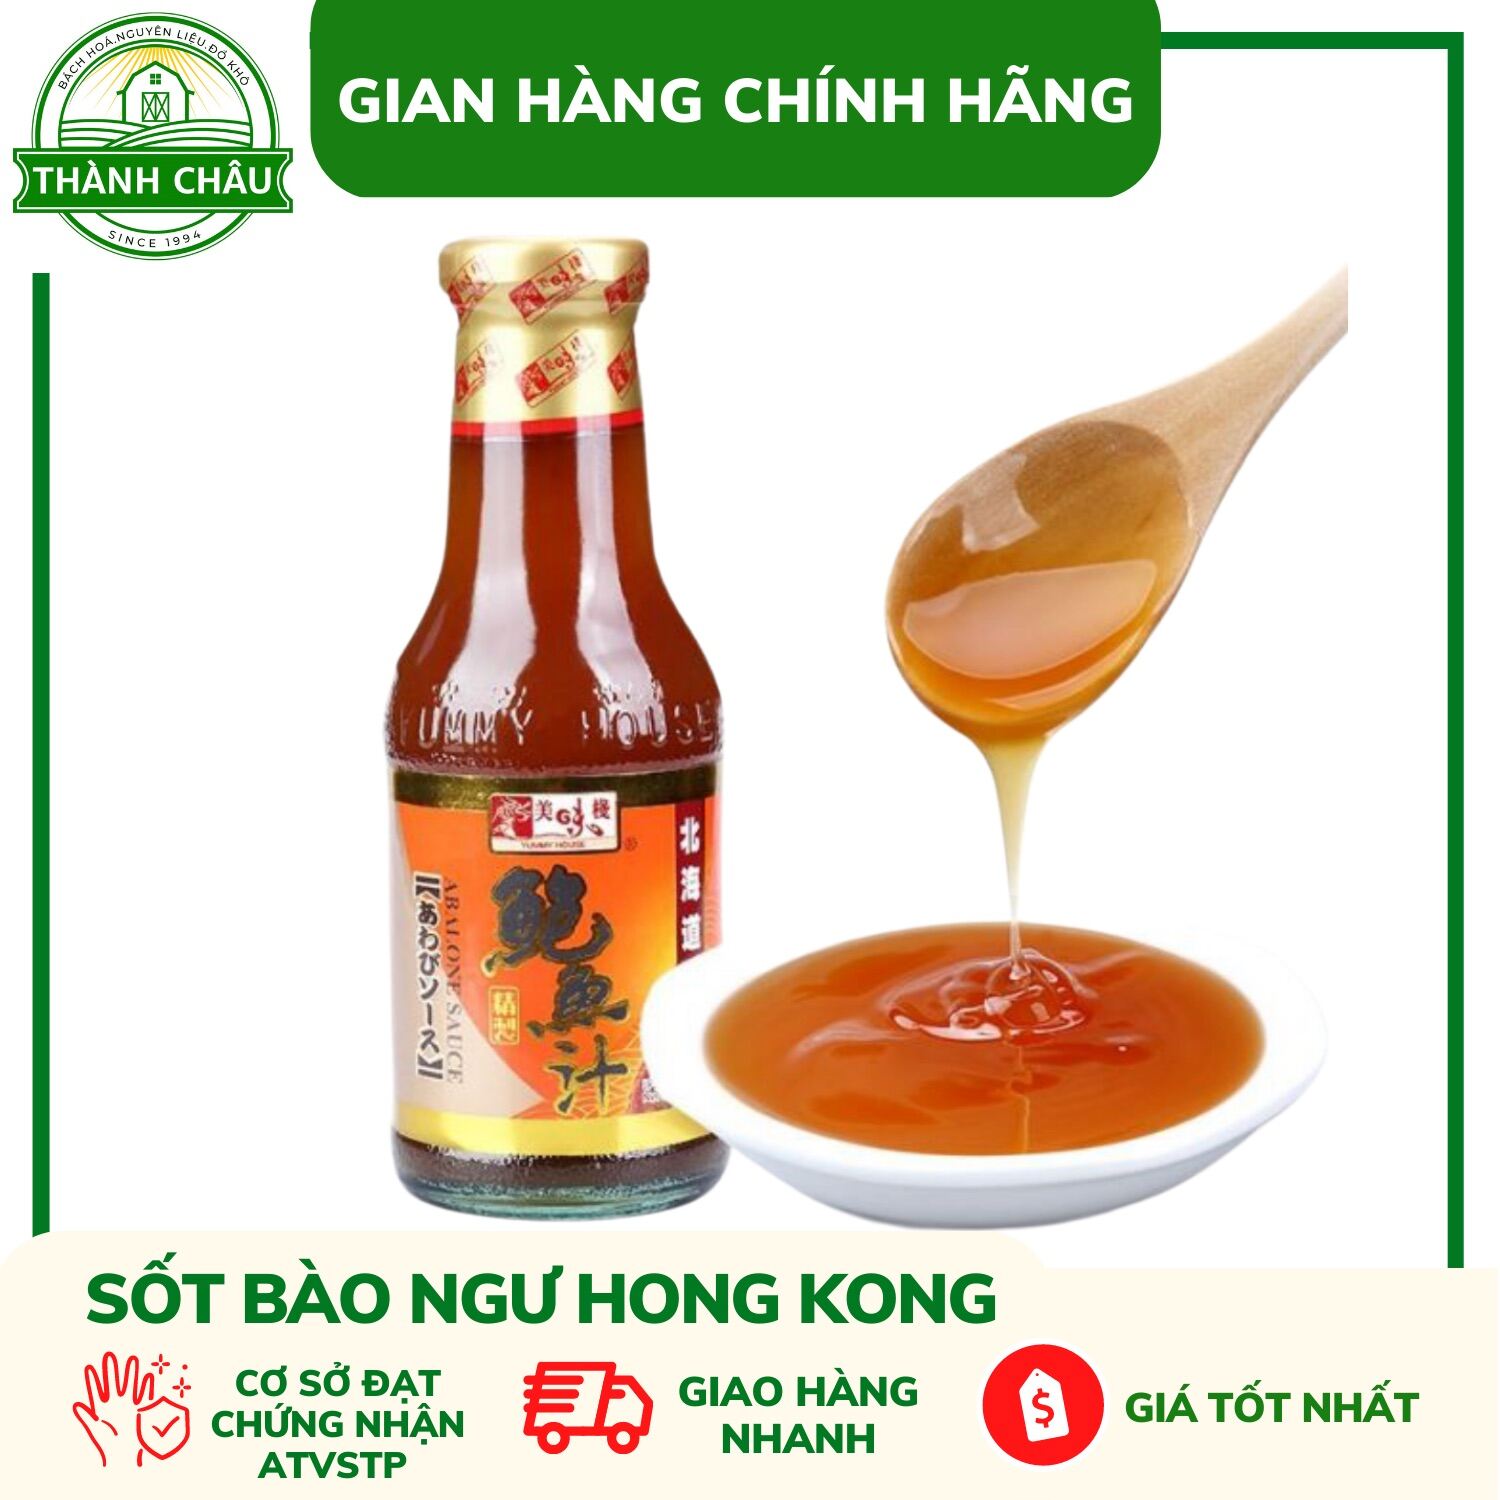 Nhập khẩu Sốt Bào Ngư Hồng Kông Yummy House Abalone Sauce 380g Chính Hãng